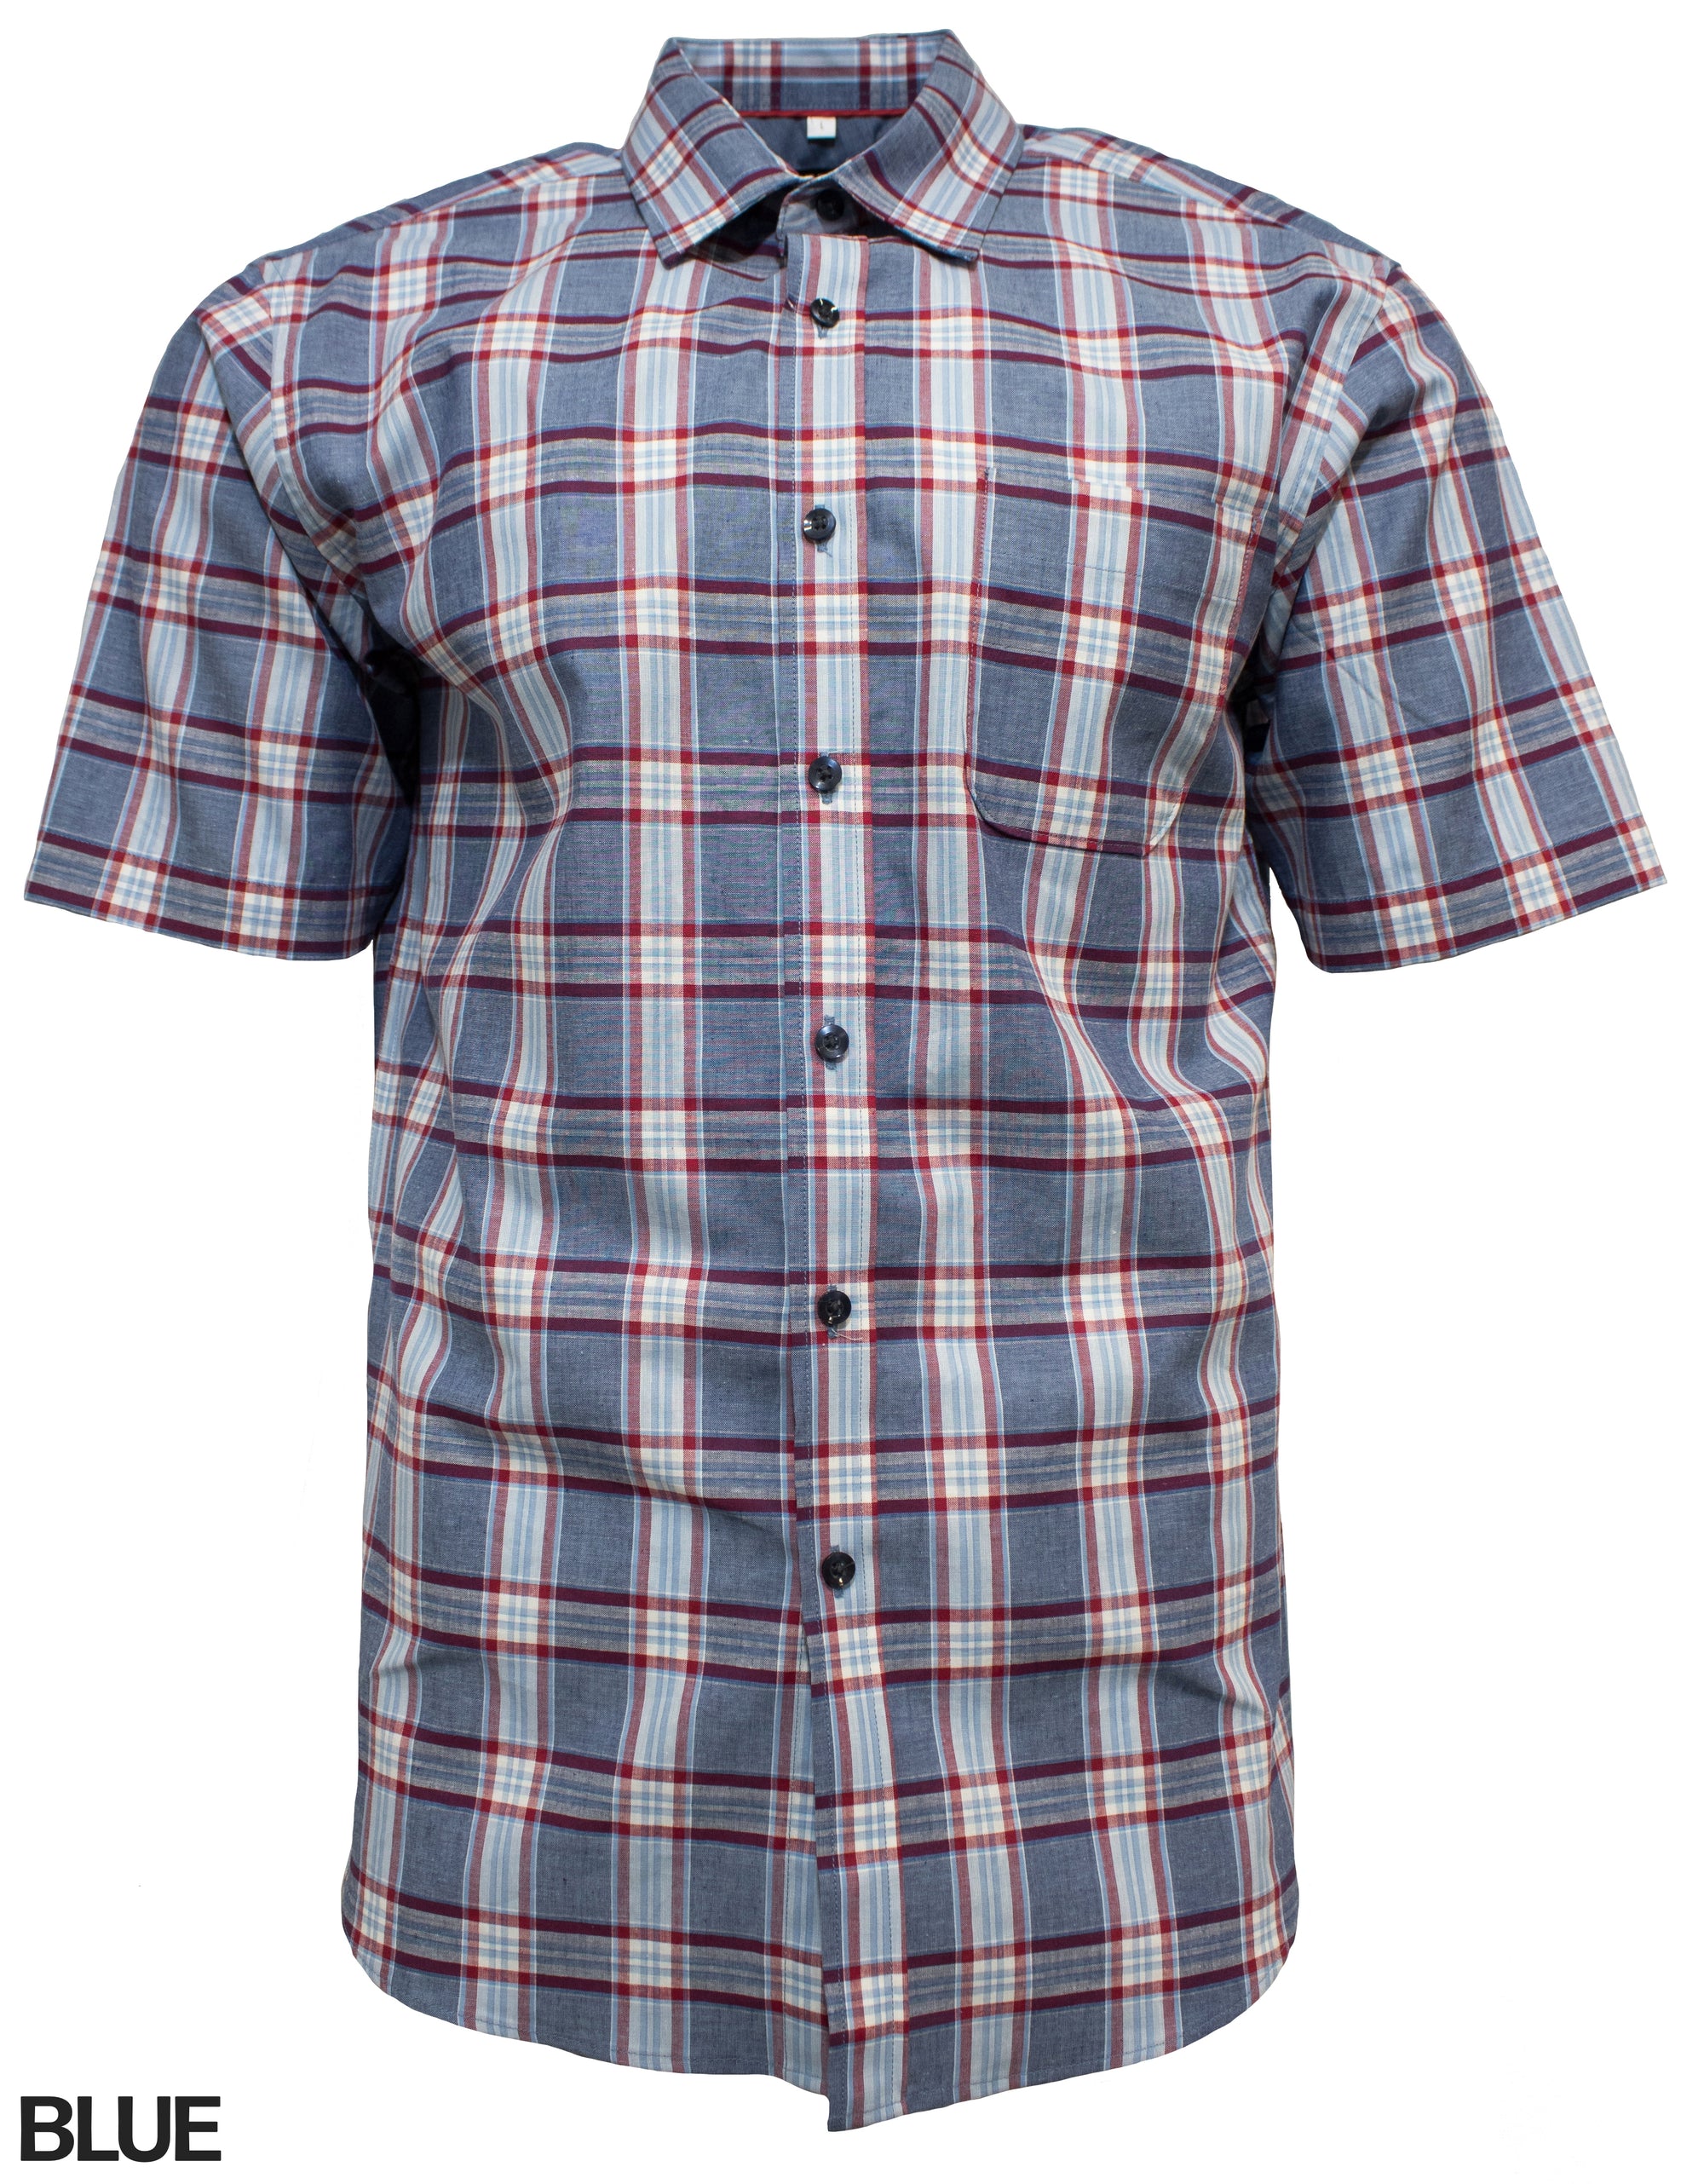 Perrone Lino Shirt - Mainstreet Clothing